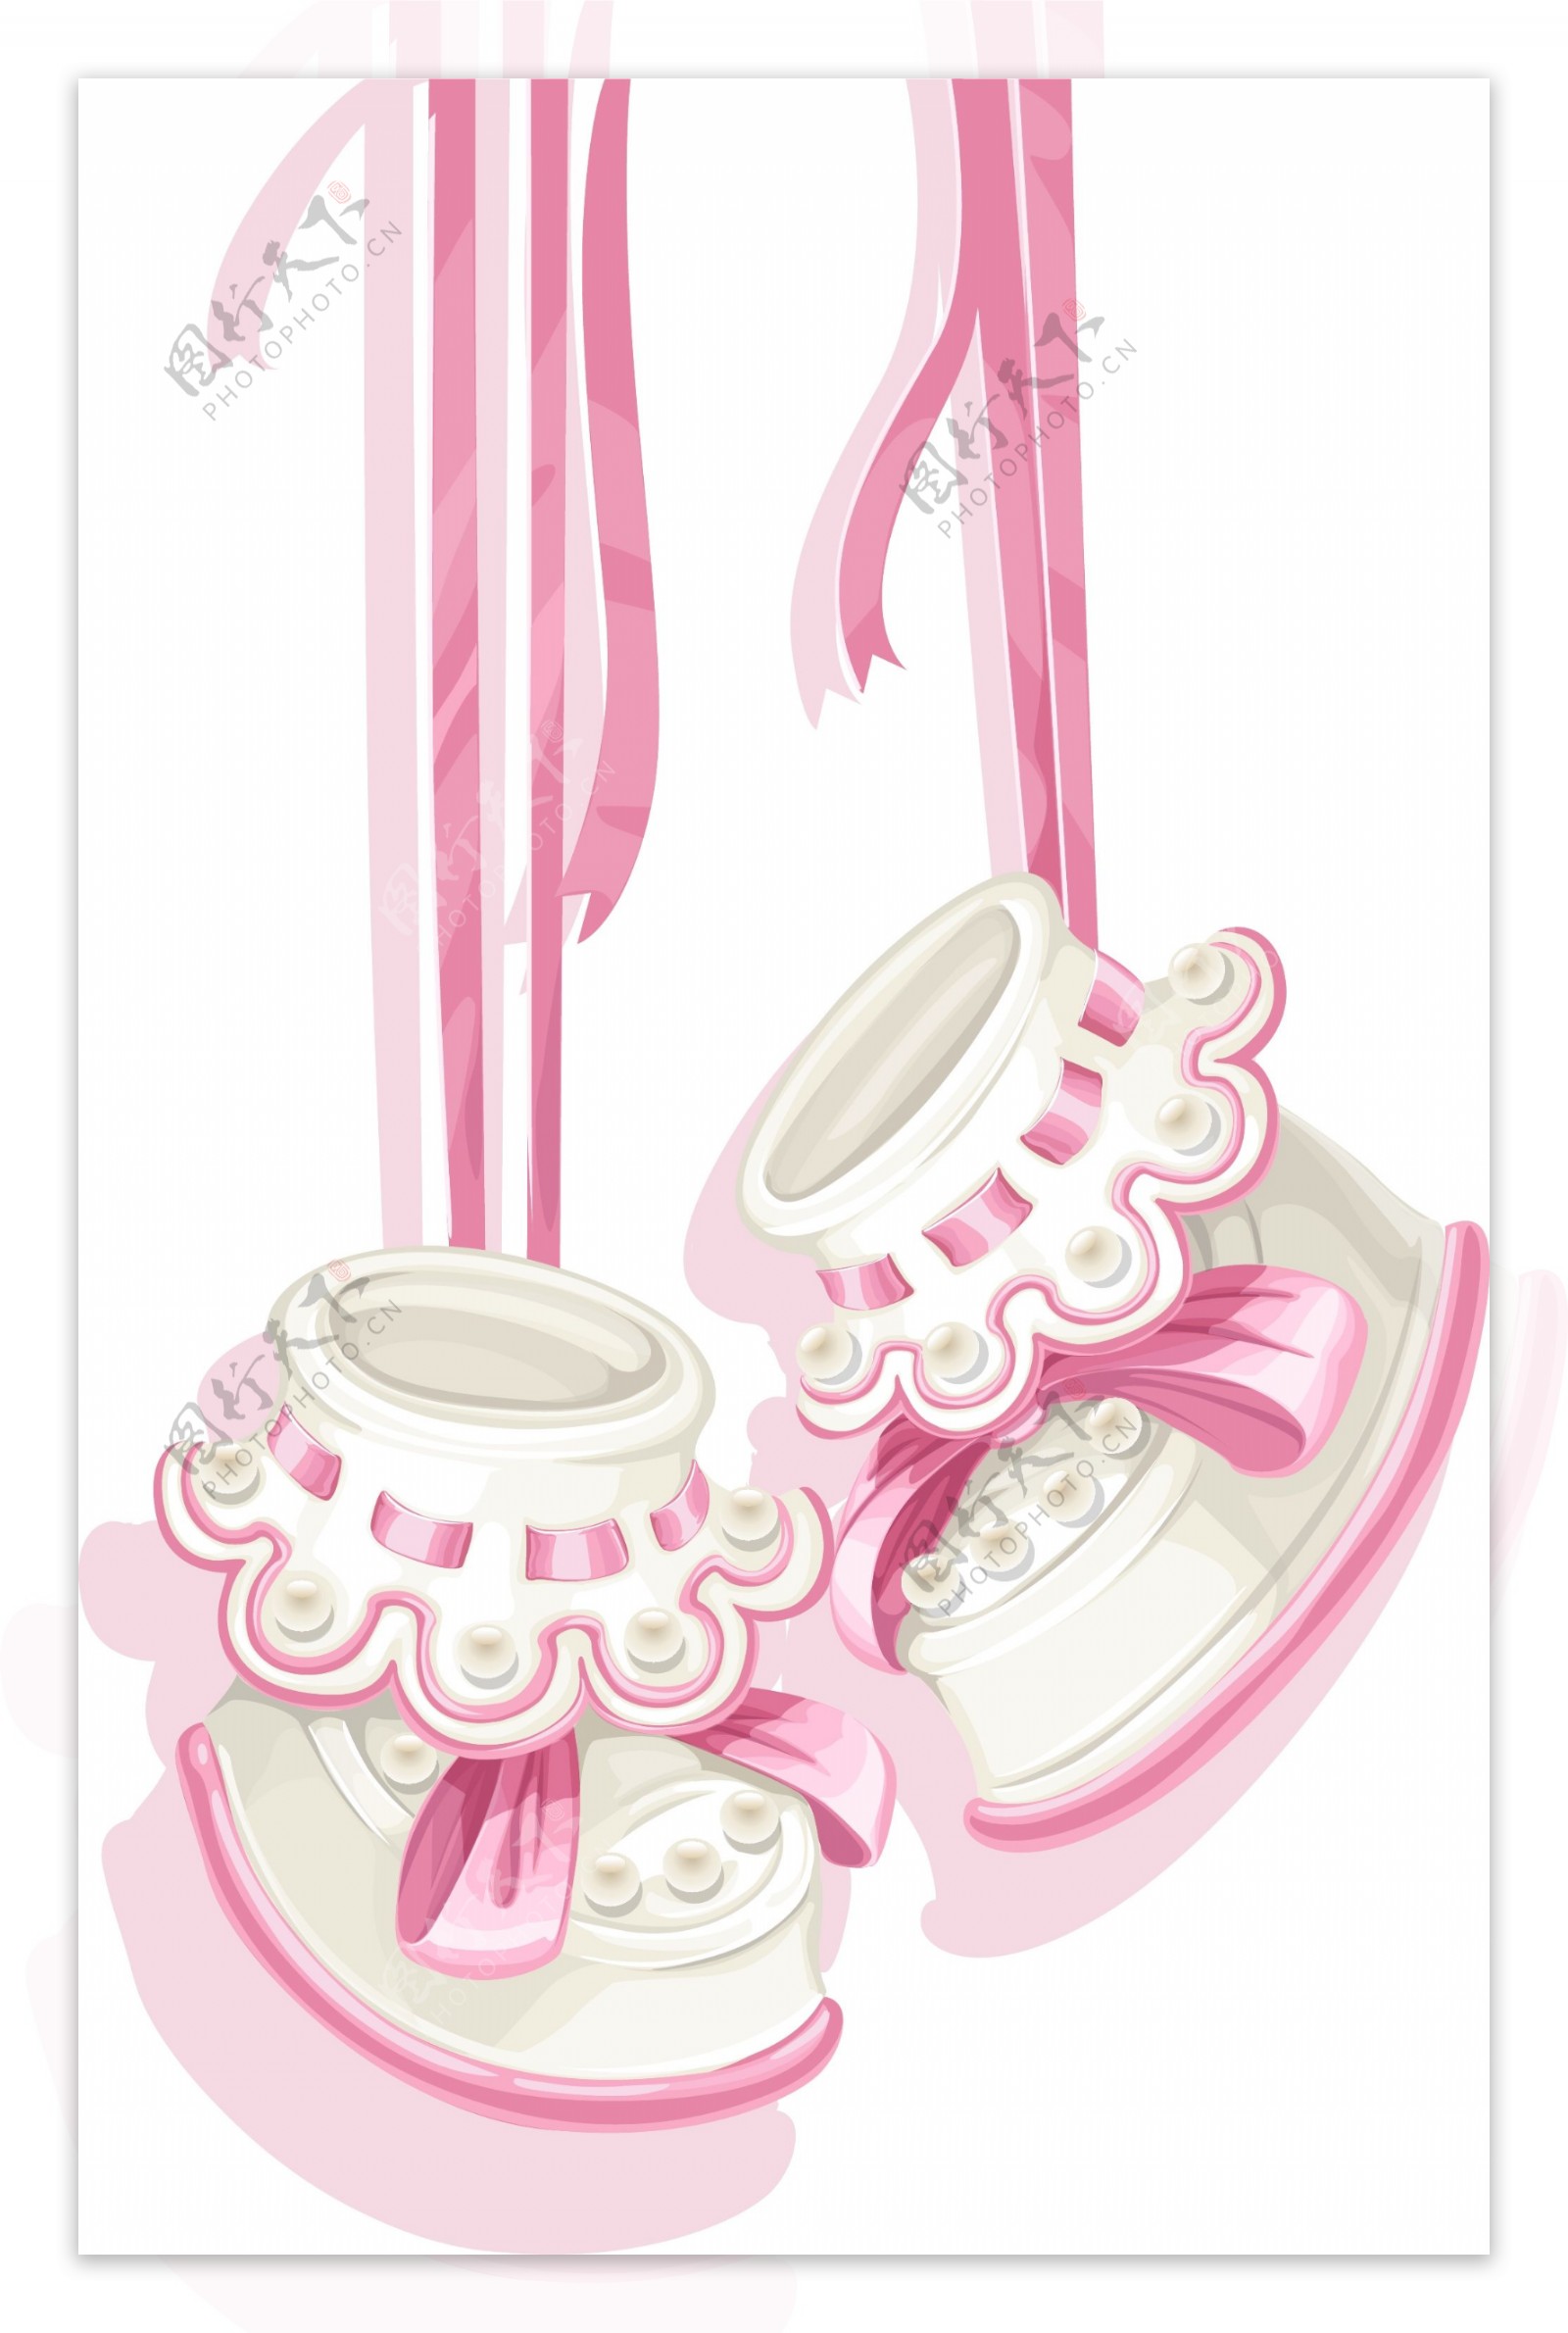 粉色可爱宝宝鞋矢量图